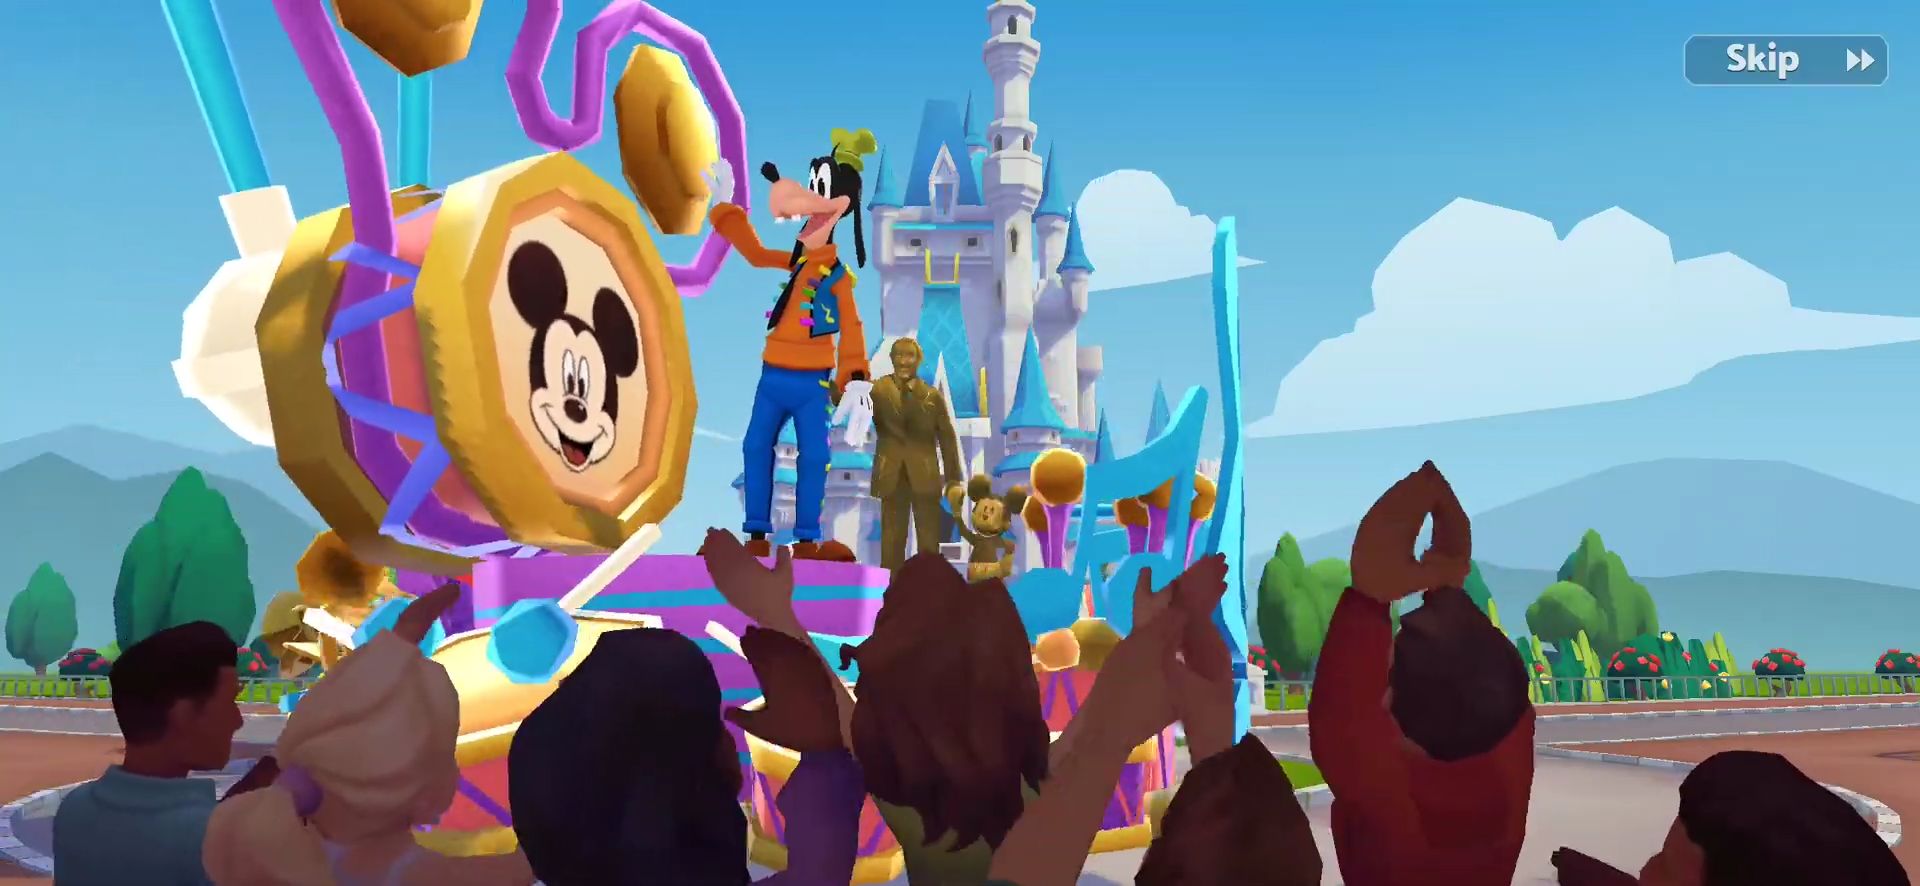 Download Disney Wonderful Worlds für Android kostenlos.